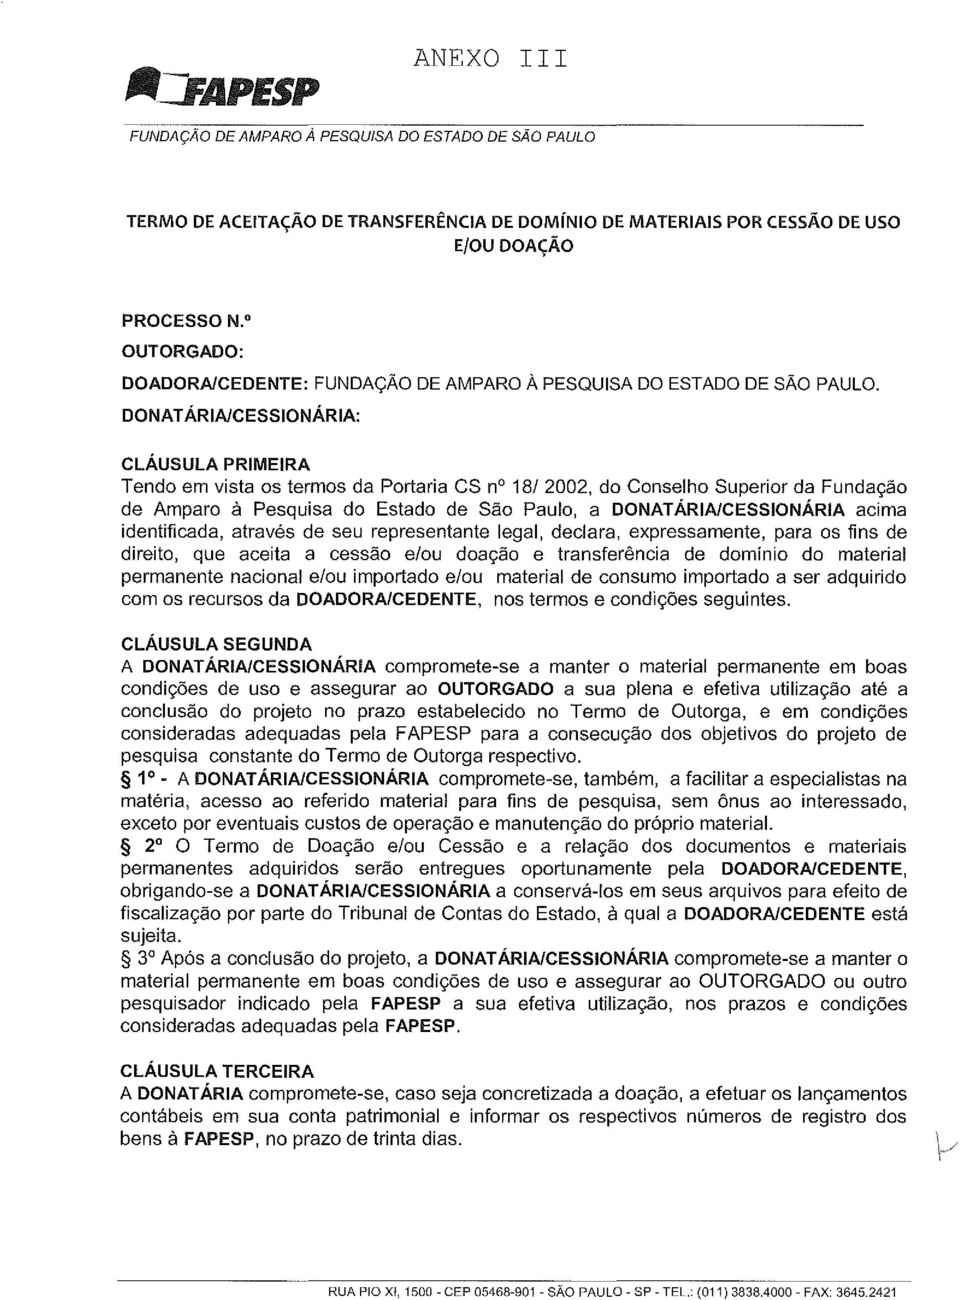 DONATÁRIA/CESSIONÁRIA: CLÁUSULA PRIMEIRA Tendo em vista os termos da Portaria CS nº 18/ 2002, do Conselho Superior da Fundação de Amparo à Pesquisa do Estado de São Paulo, a DONATÁRIA/CESSIONÁRIA